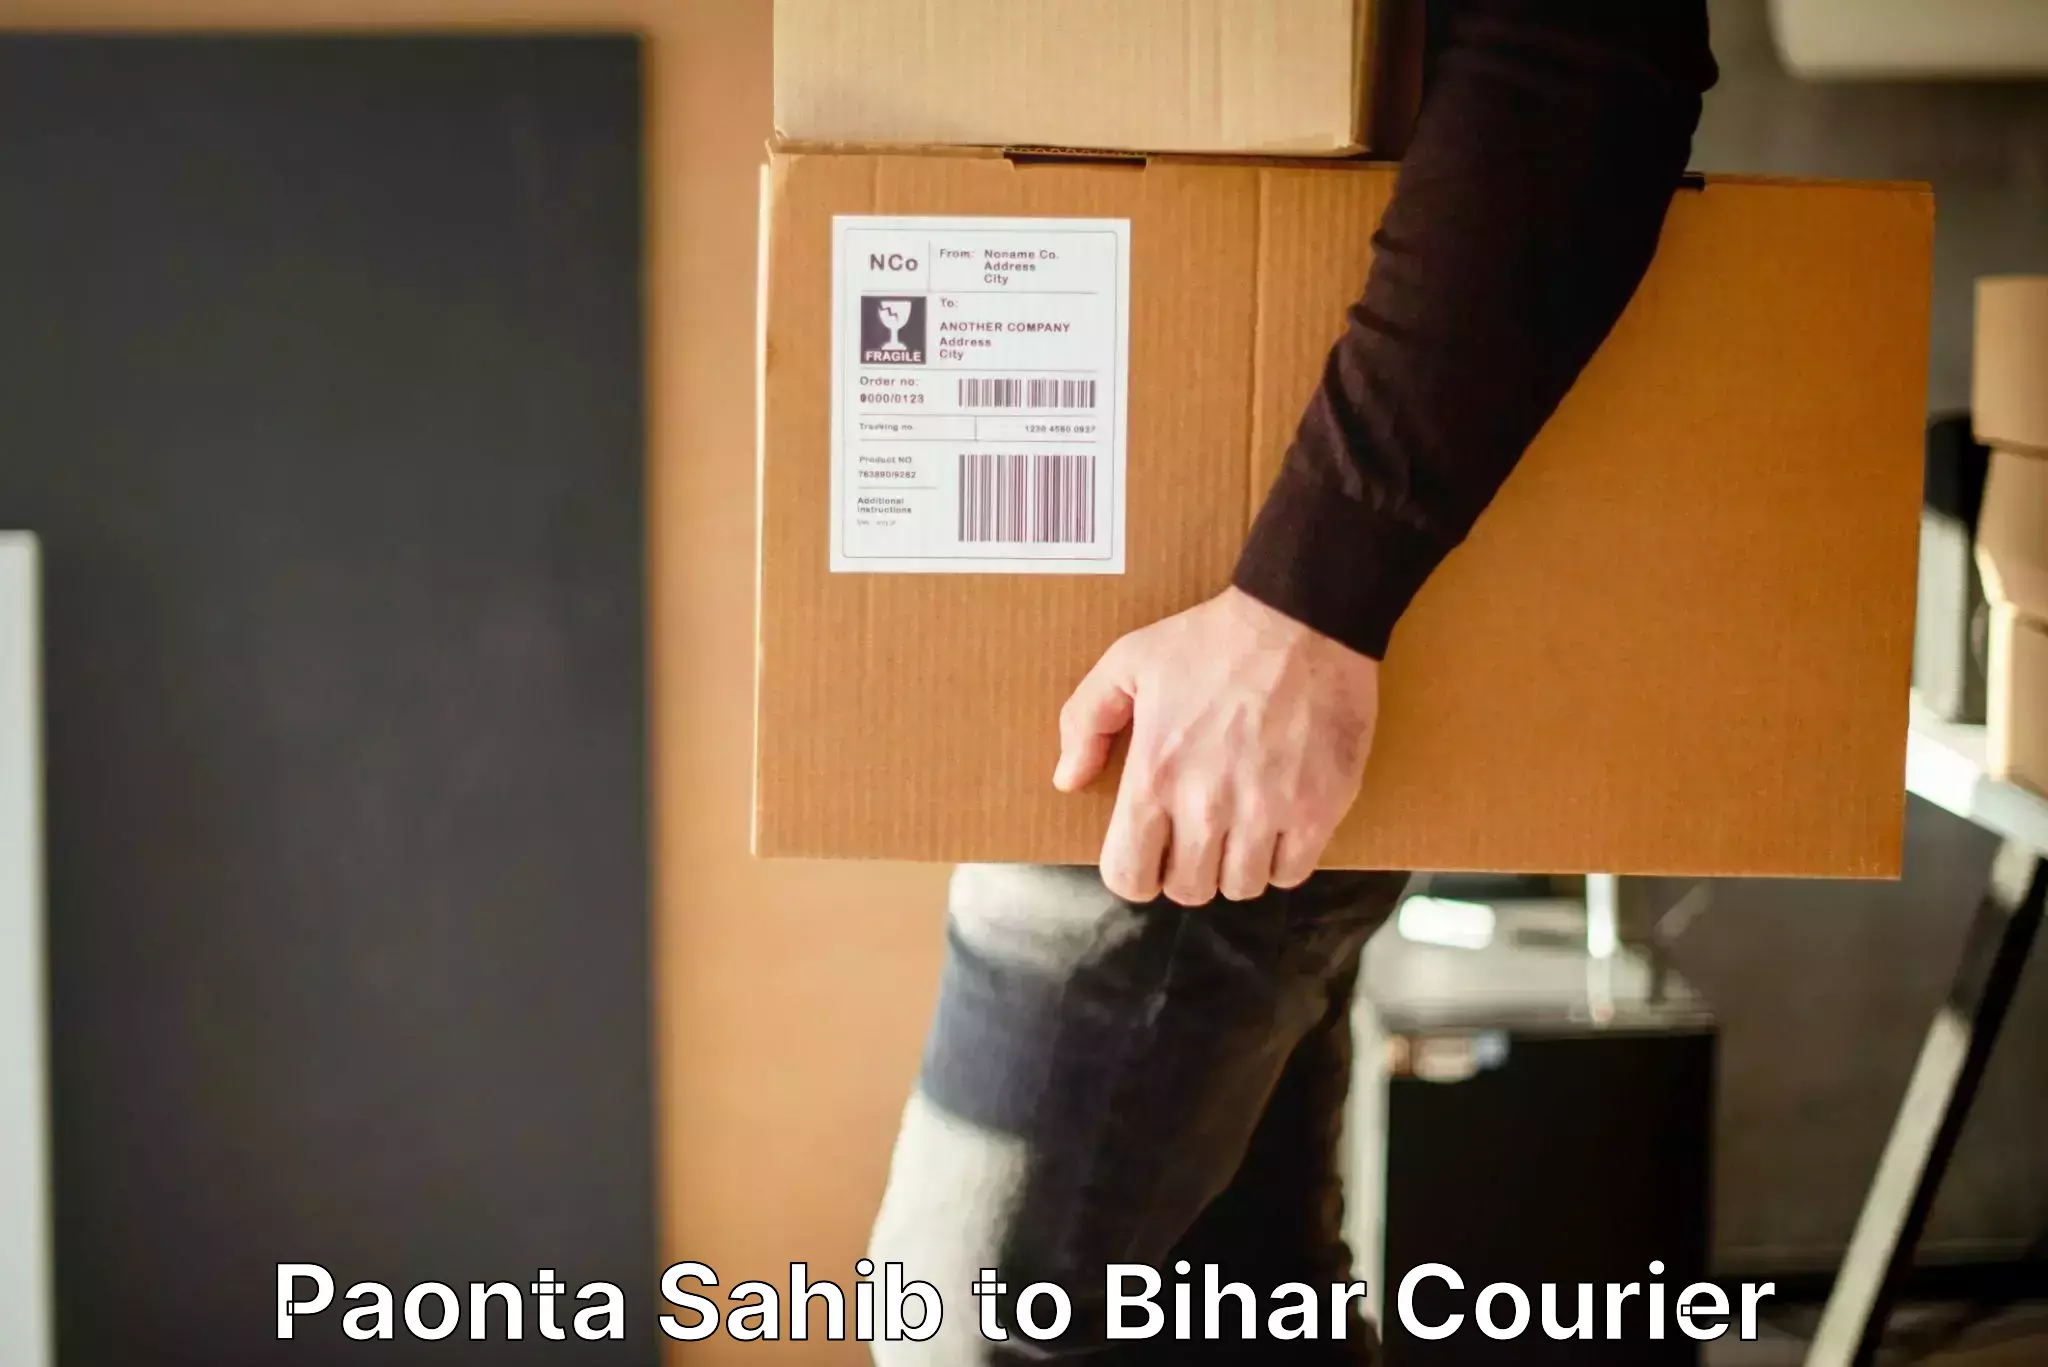 Baggage shipping logistics Paonta Sahib to Kochas